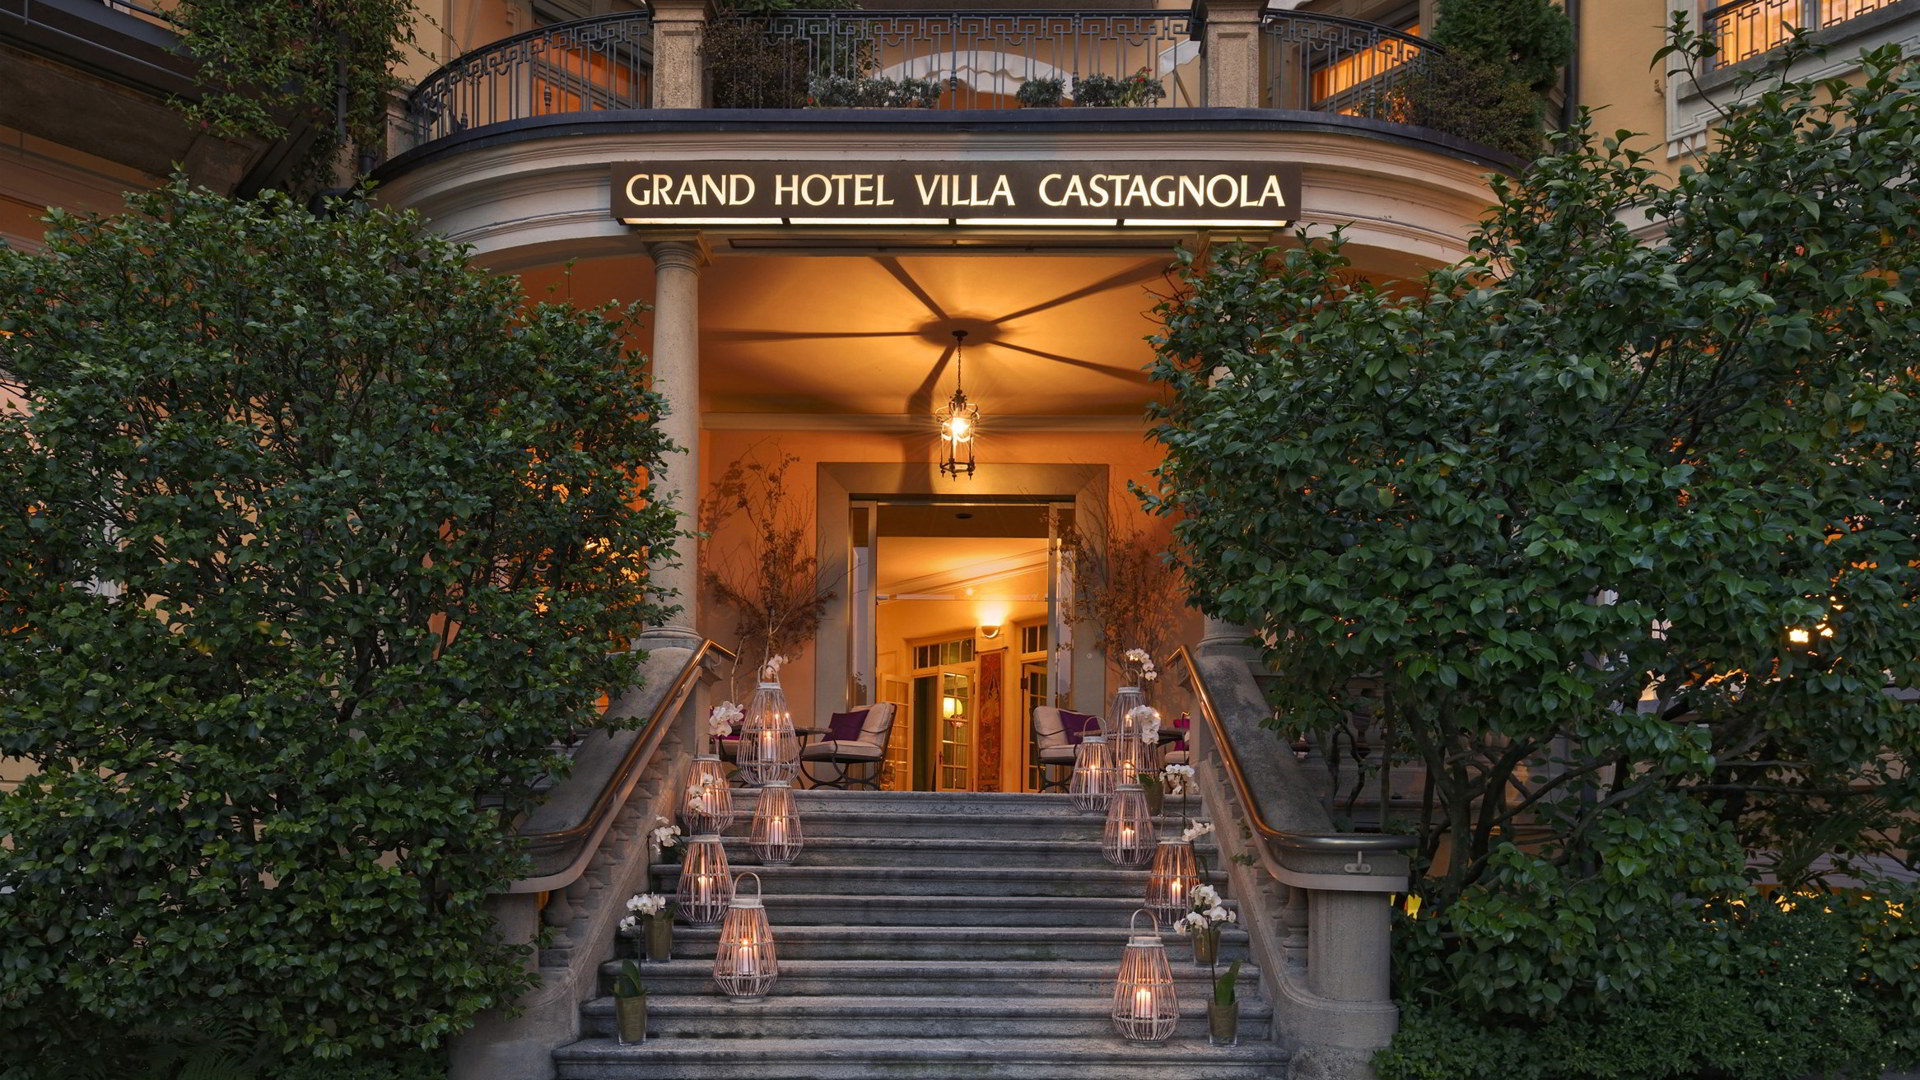 فيلا كاستانولا الفندق الكبير - slide